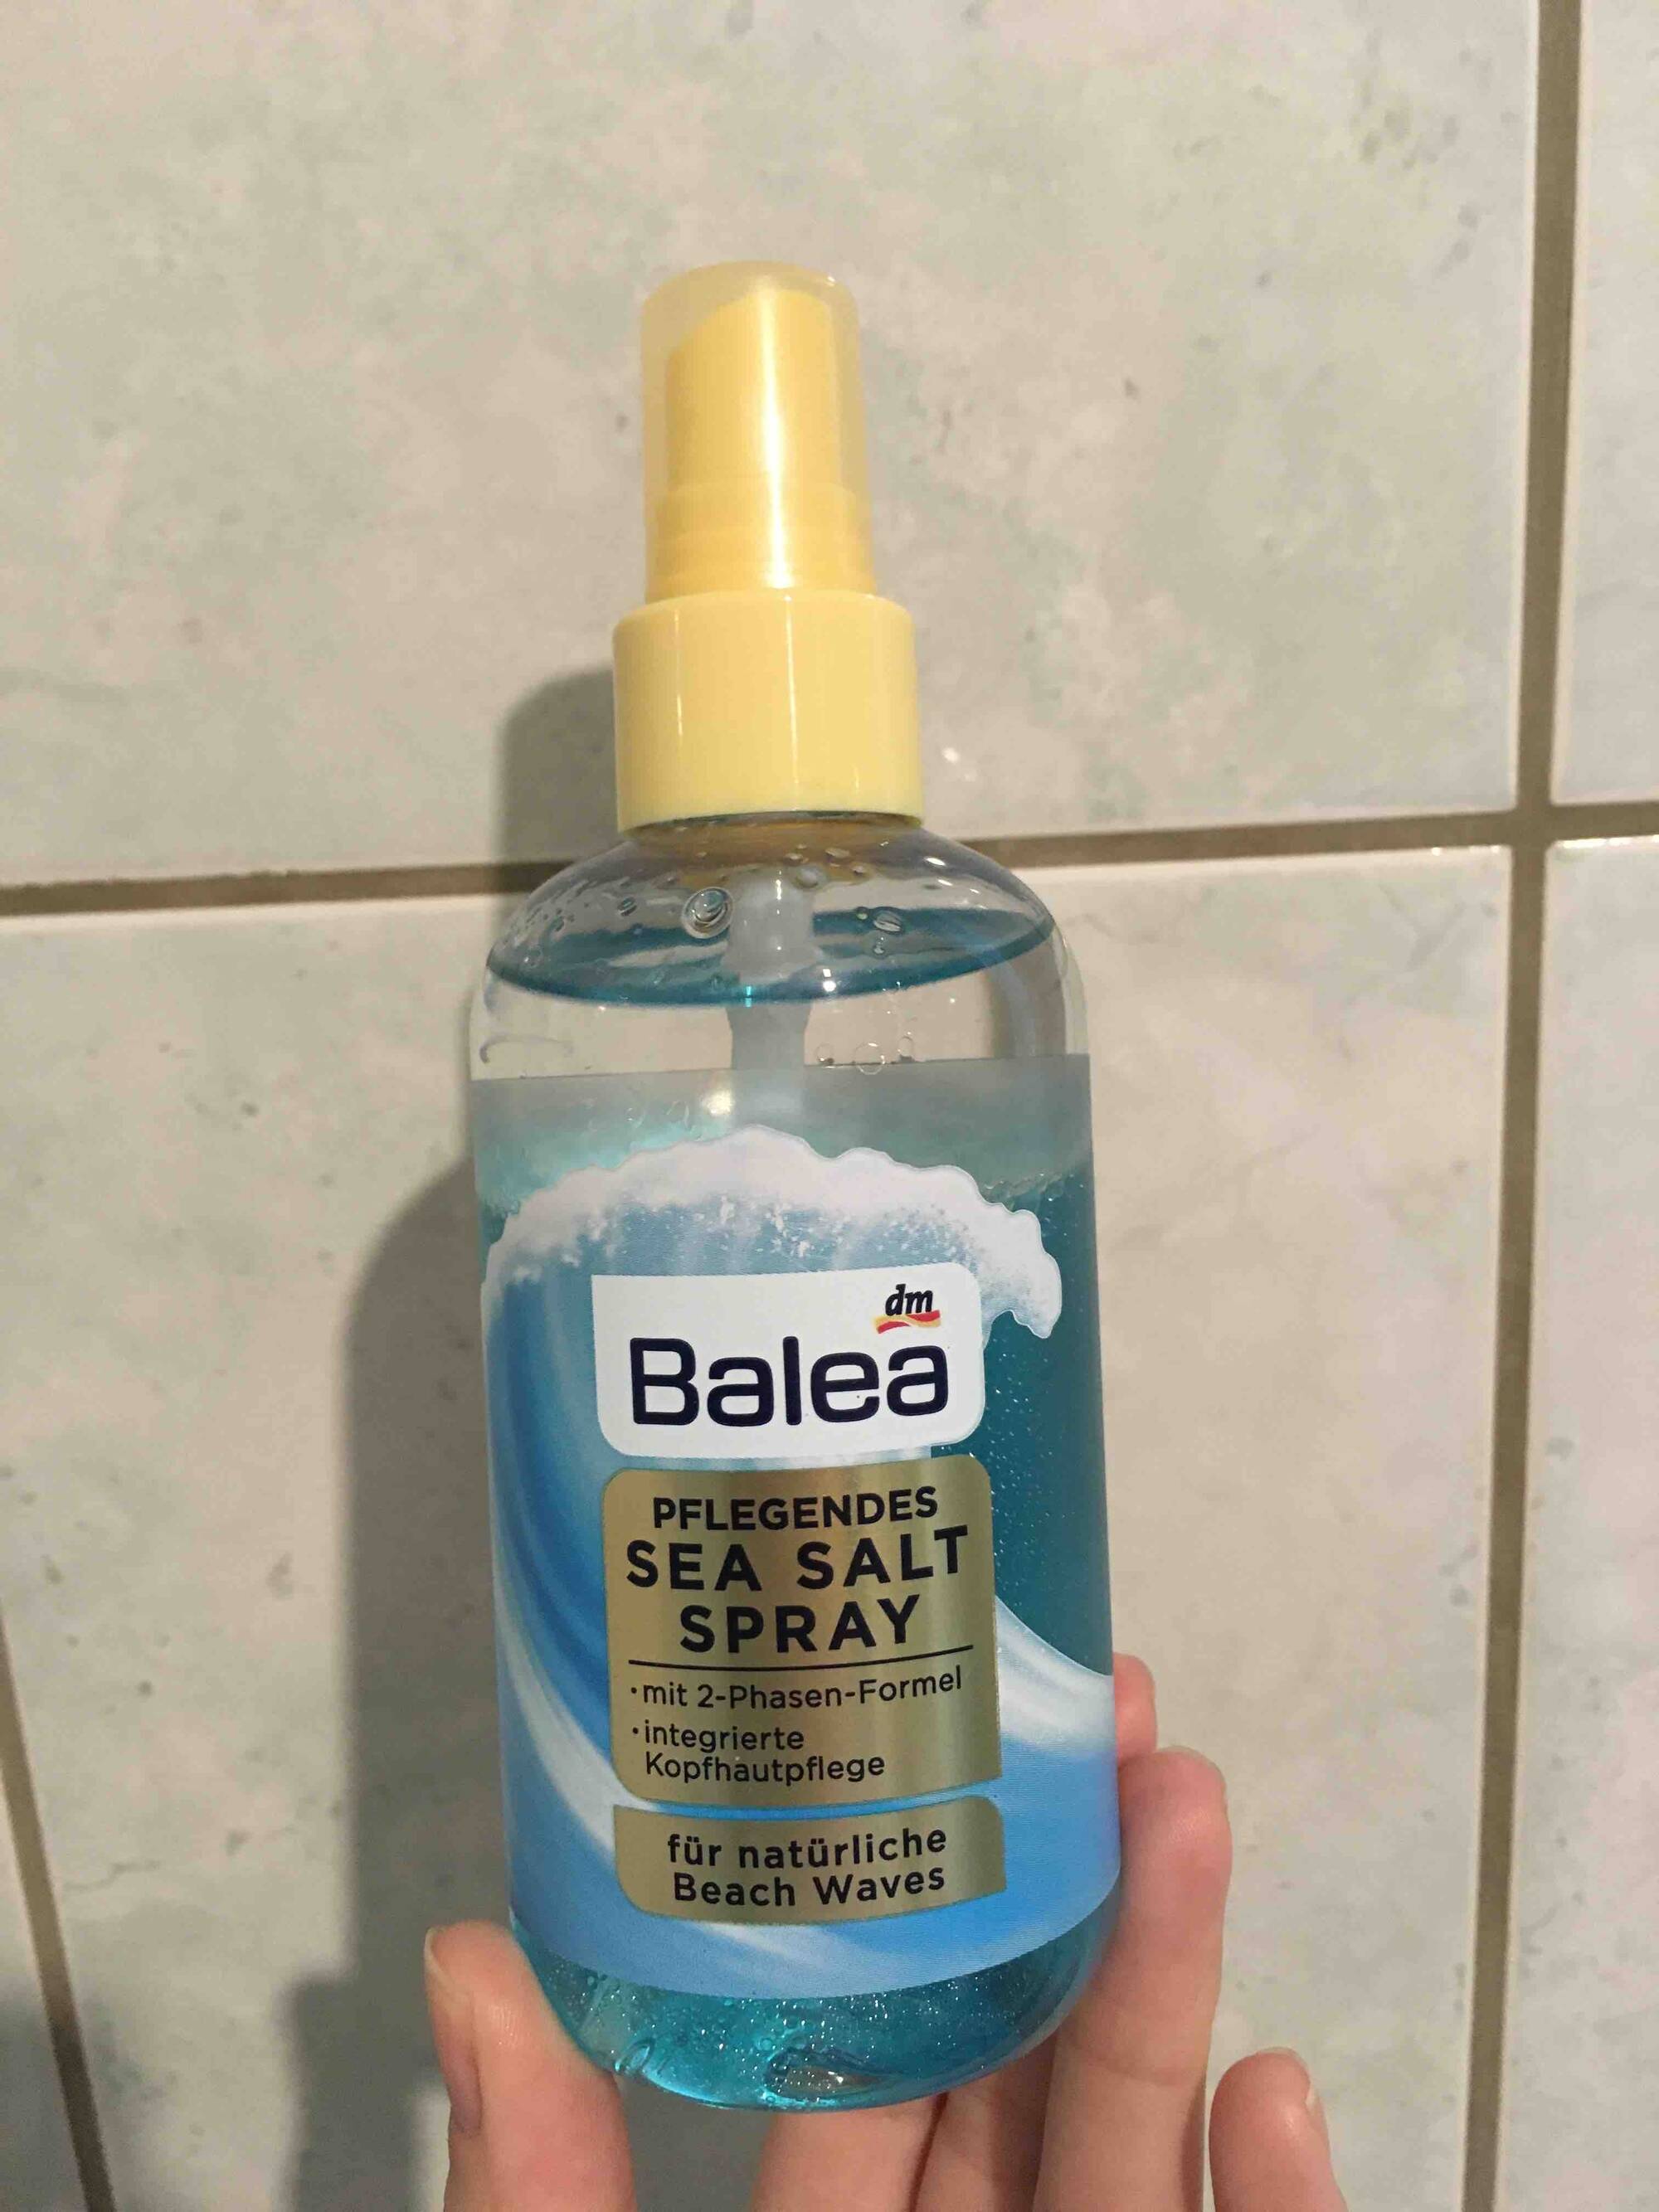 BALEA - Pflegendes sea salt spray